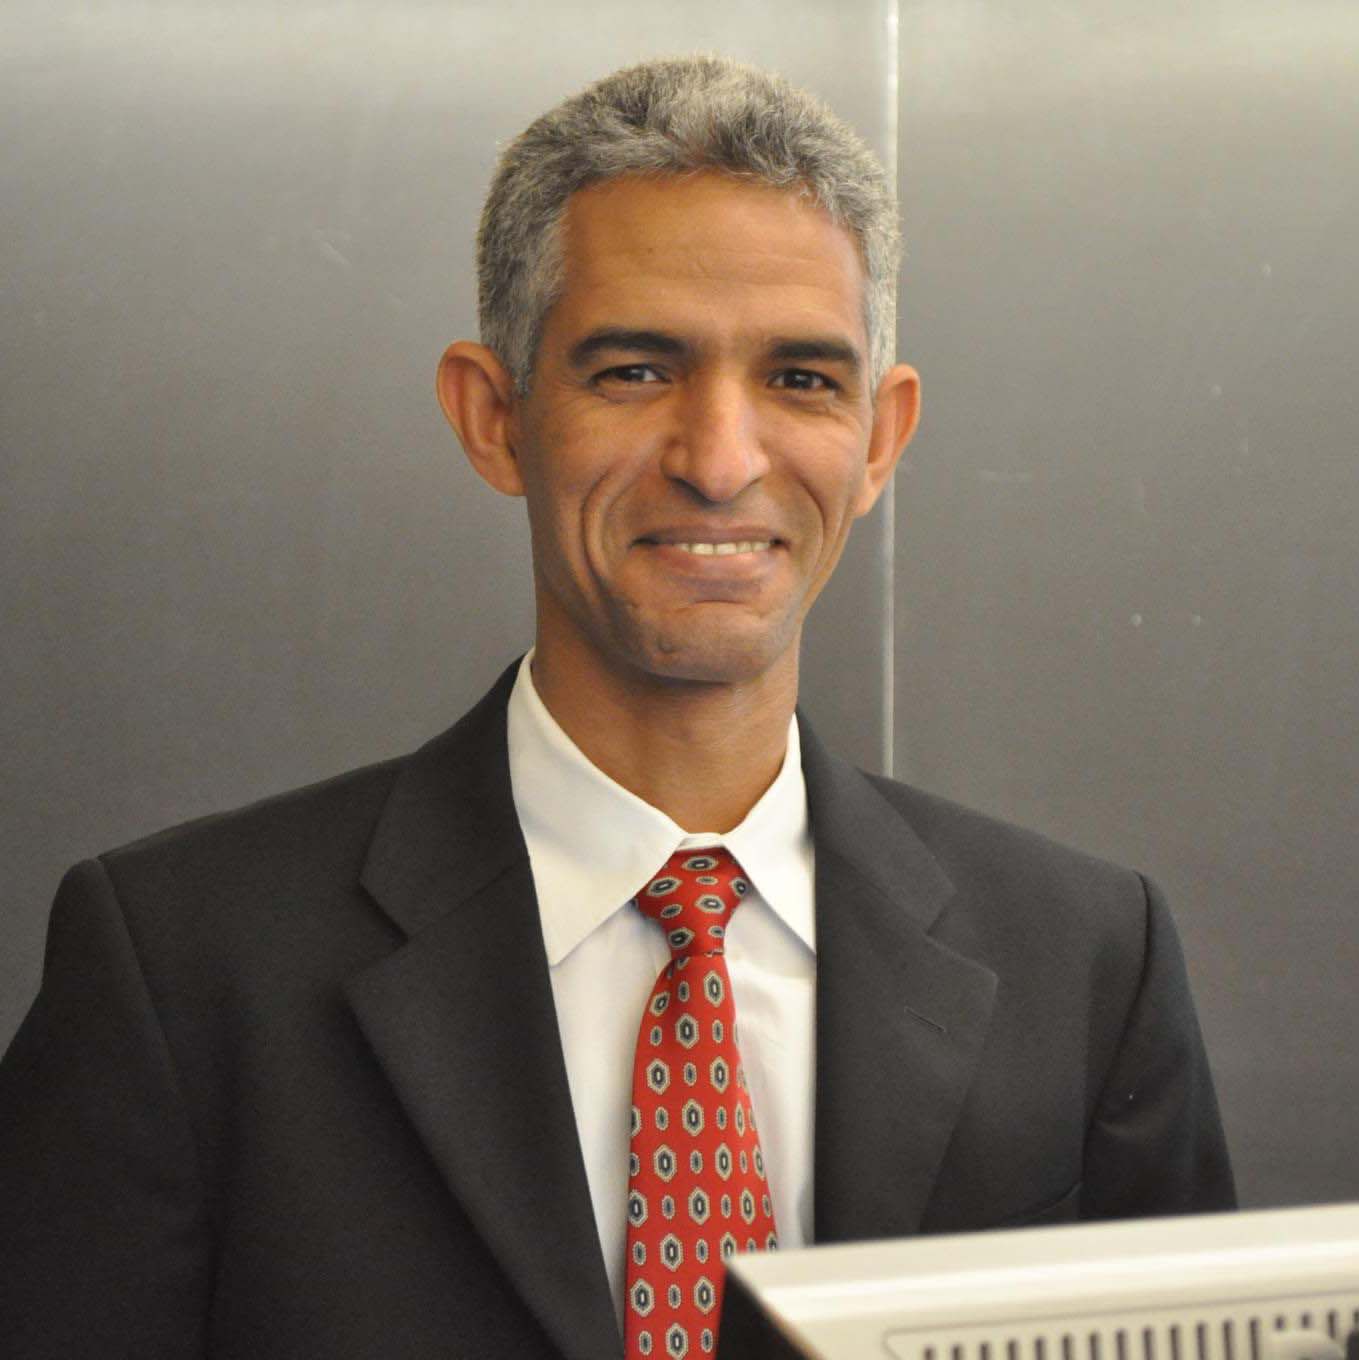 الدكتور احمد ولد سيدي محمد خبير في علم الأوبئة، وعضو هيئة تدريس جامعي، مقيم في الولايات المتحدة الأمريكية